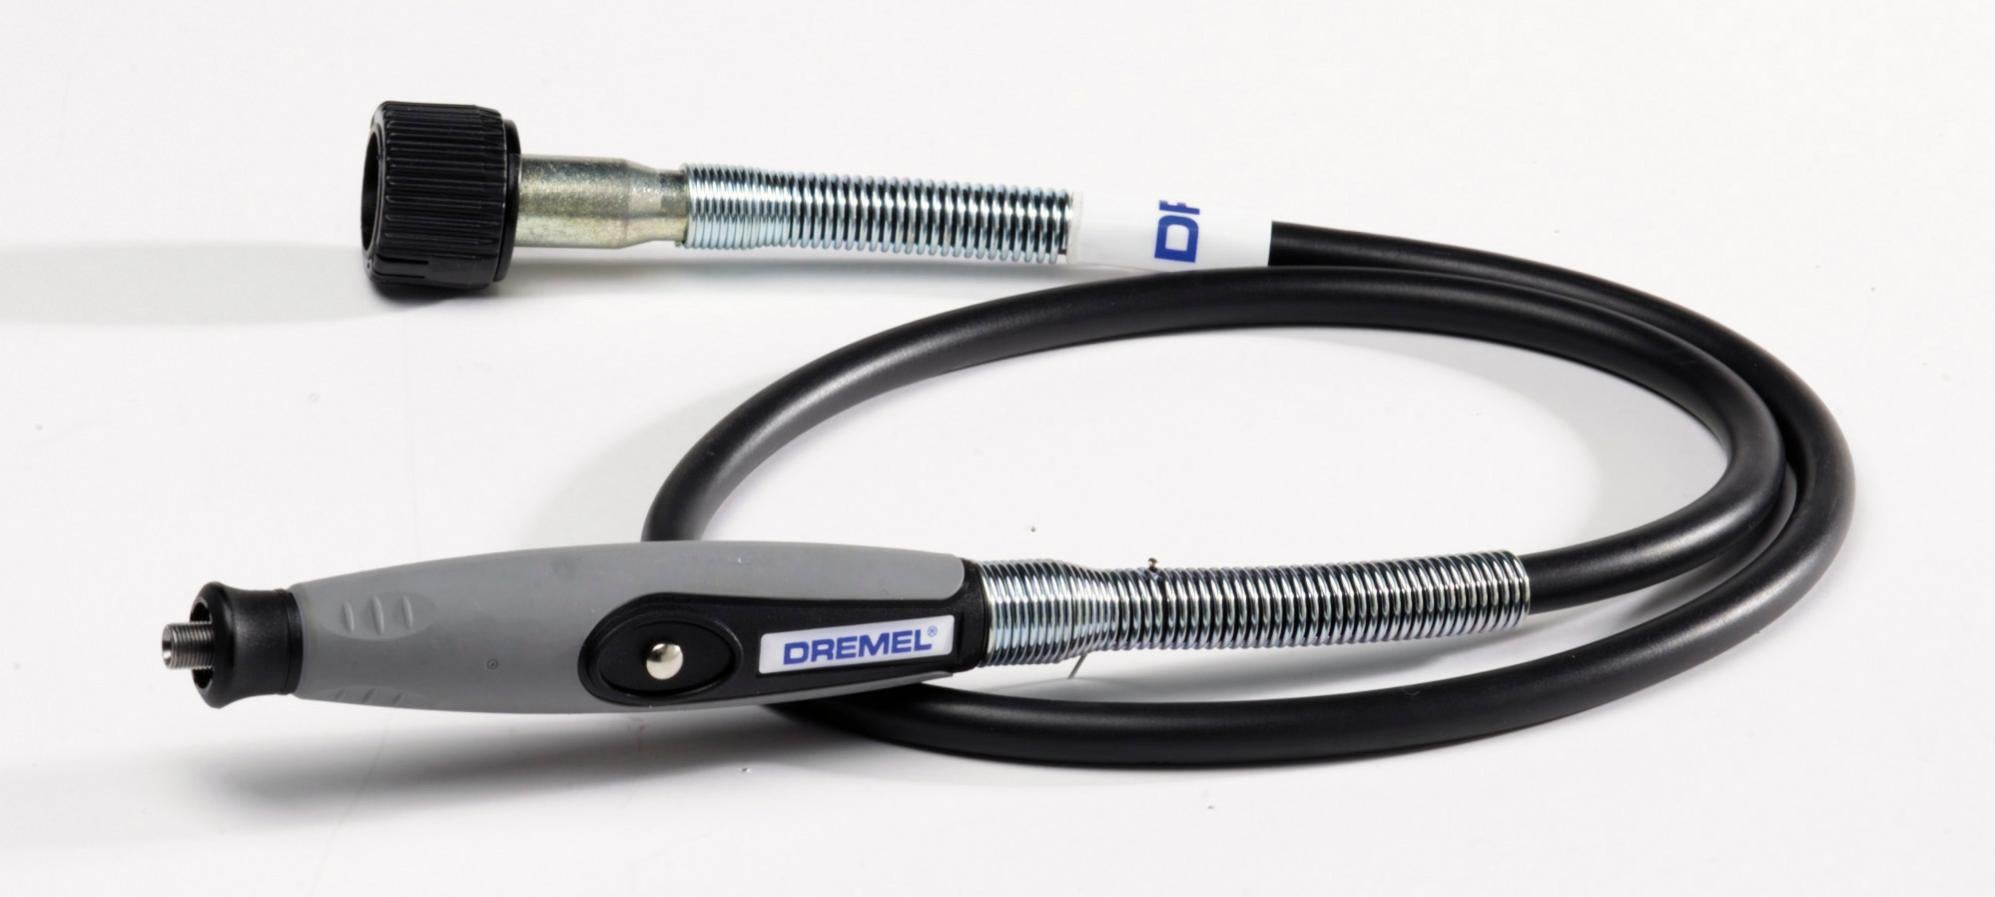 Flexible perceuse Tige extension Mandrin sans clé Compatible Outil accessoire de fixation pour Dremel Outil rotatif 